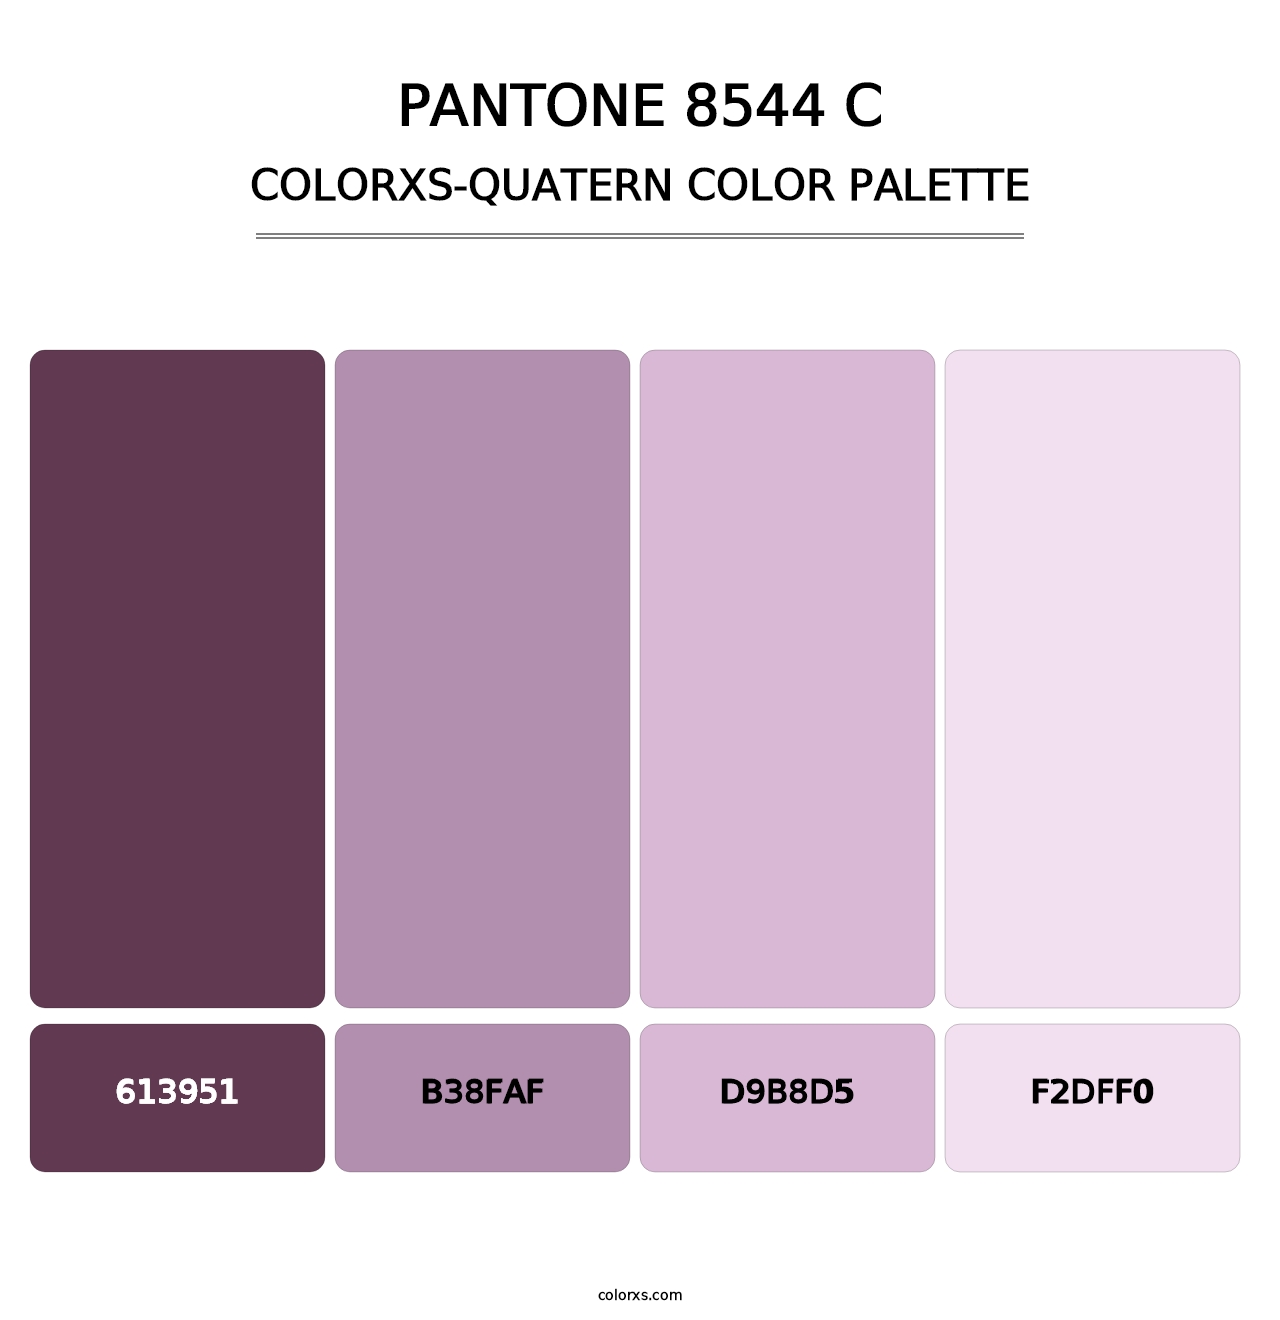 PANTONE 8544 C - Colorxs Quatern Palette